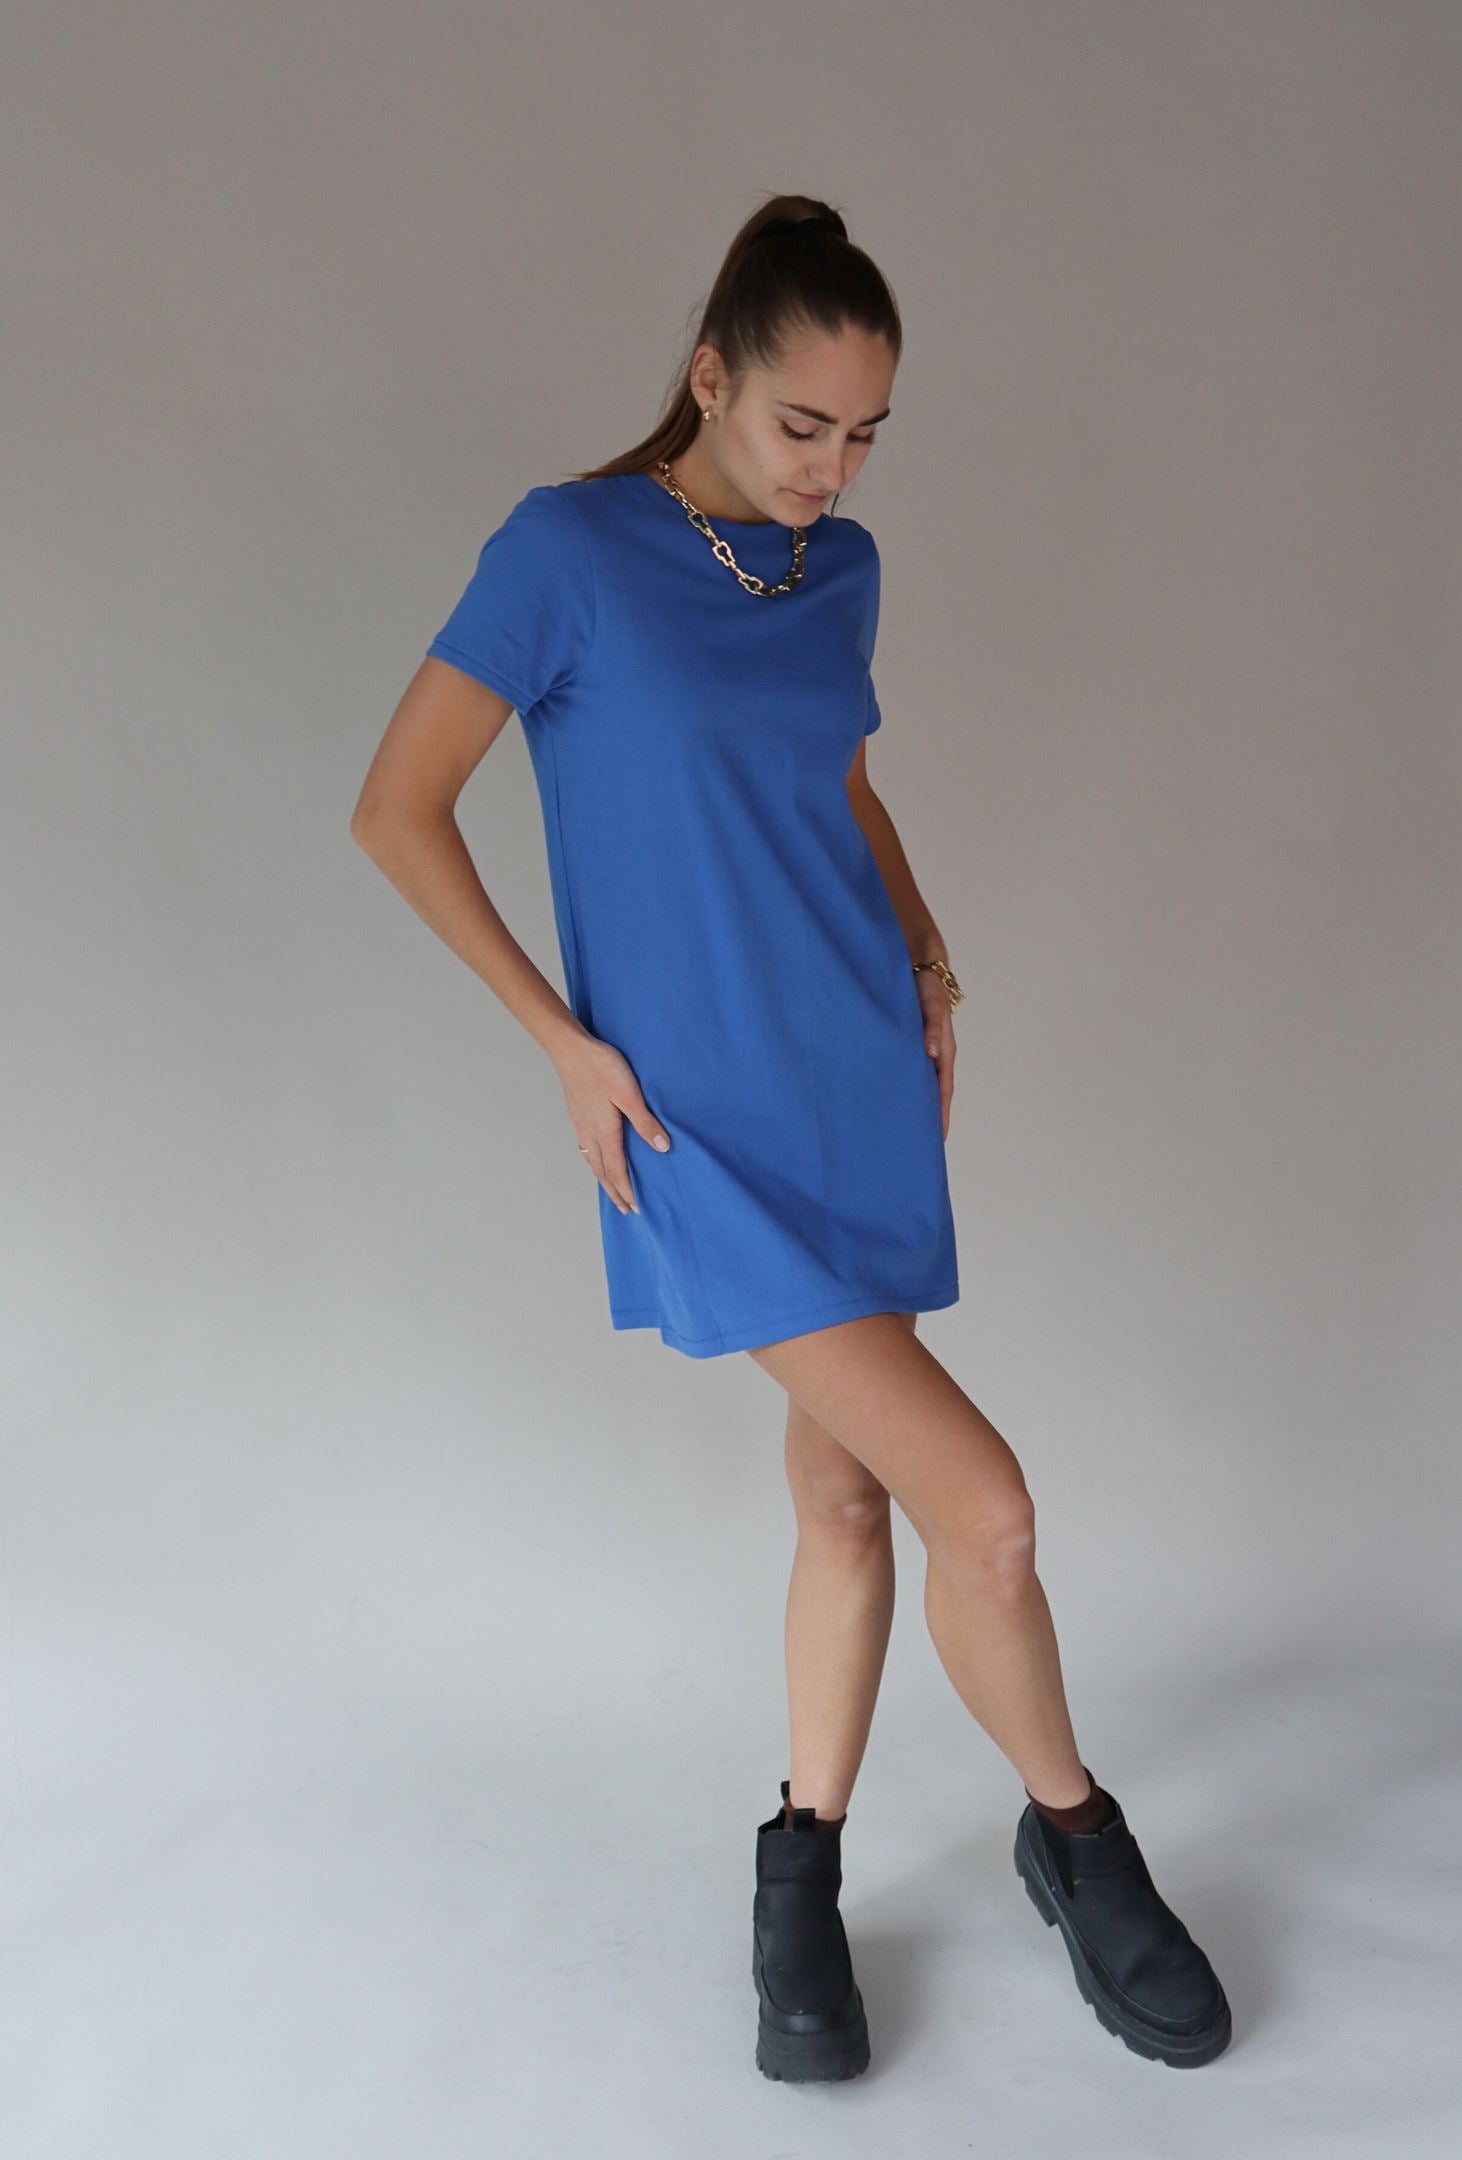 RIO BLUE TSHIRT DRESS Dress RD STYLE 